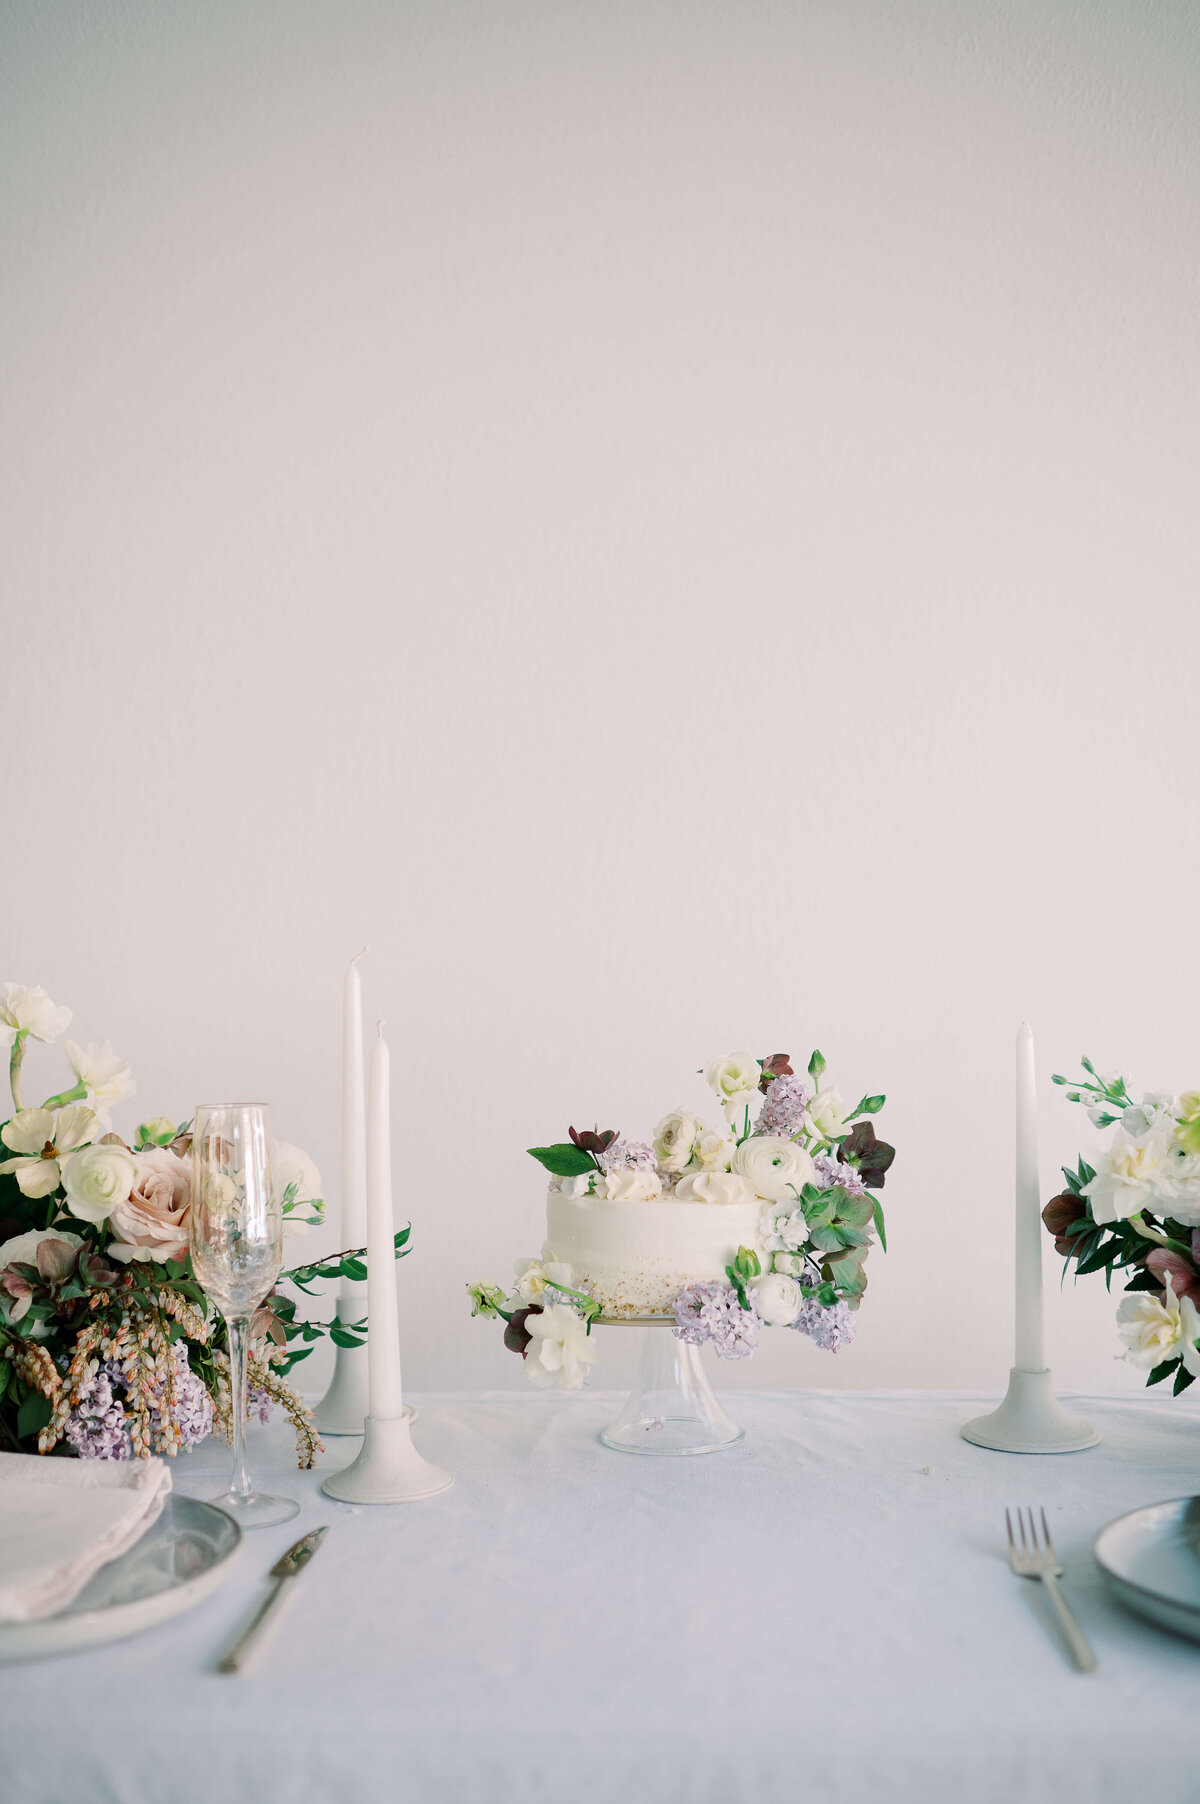 wedding cake and florals designed by Lancaster floral designer